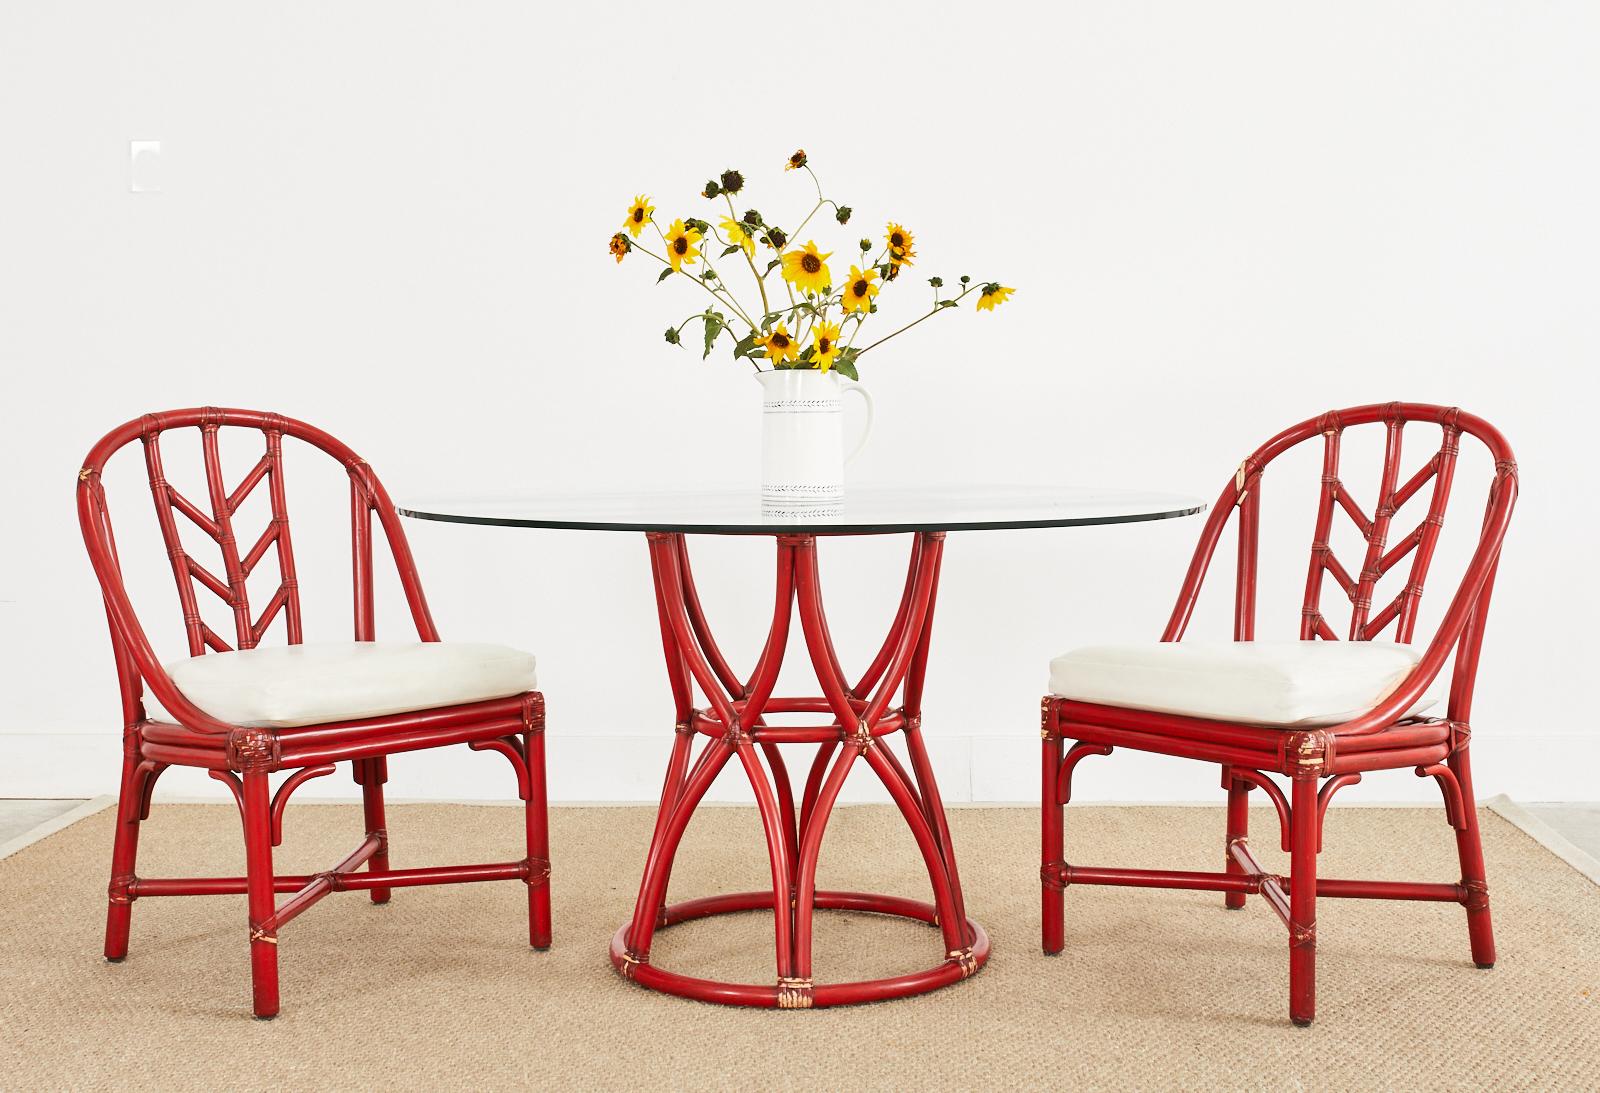 Fabuloso juego a medida de cuatro sillas de comedor de ratán McGuire lacadas y acabadas en un elegante y caprichoso color rojo carmín. Color personalizado por encargo especial de McGuire con una pátina intencionadamente envejecida en los cordones de